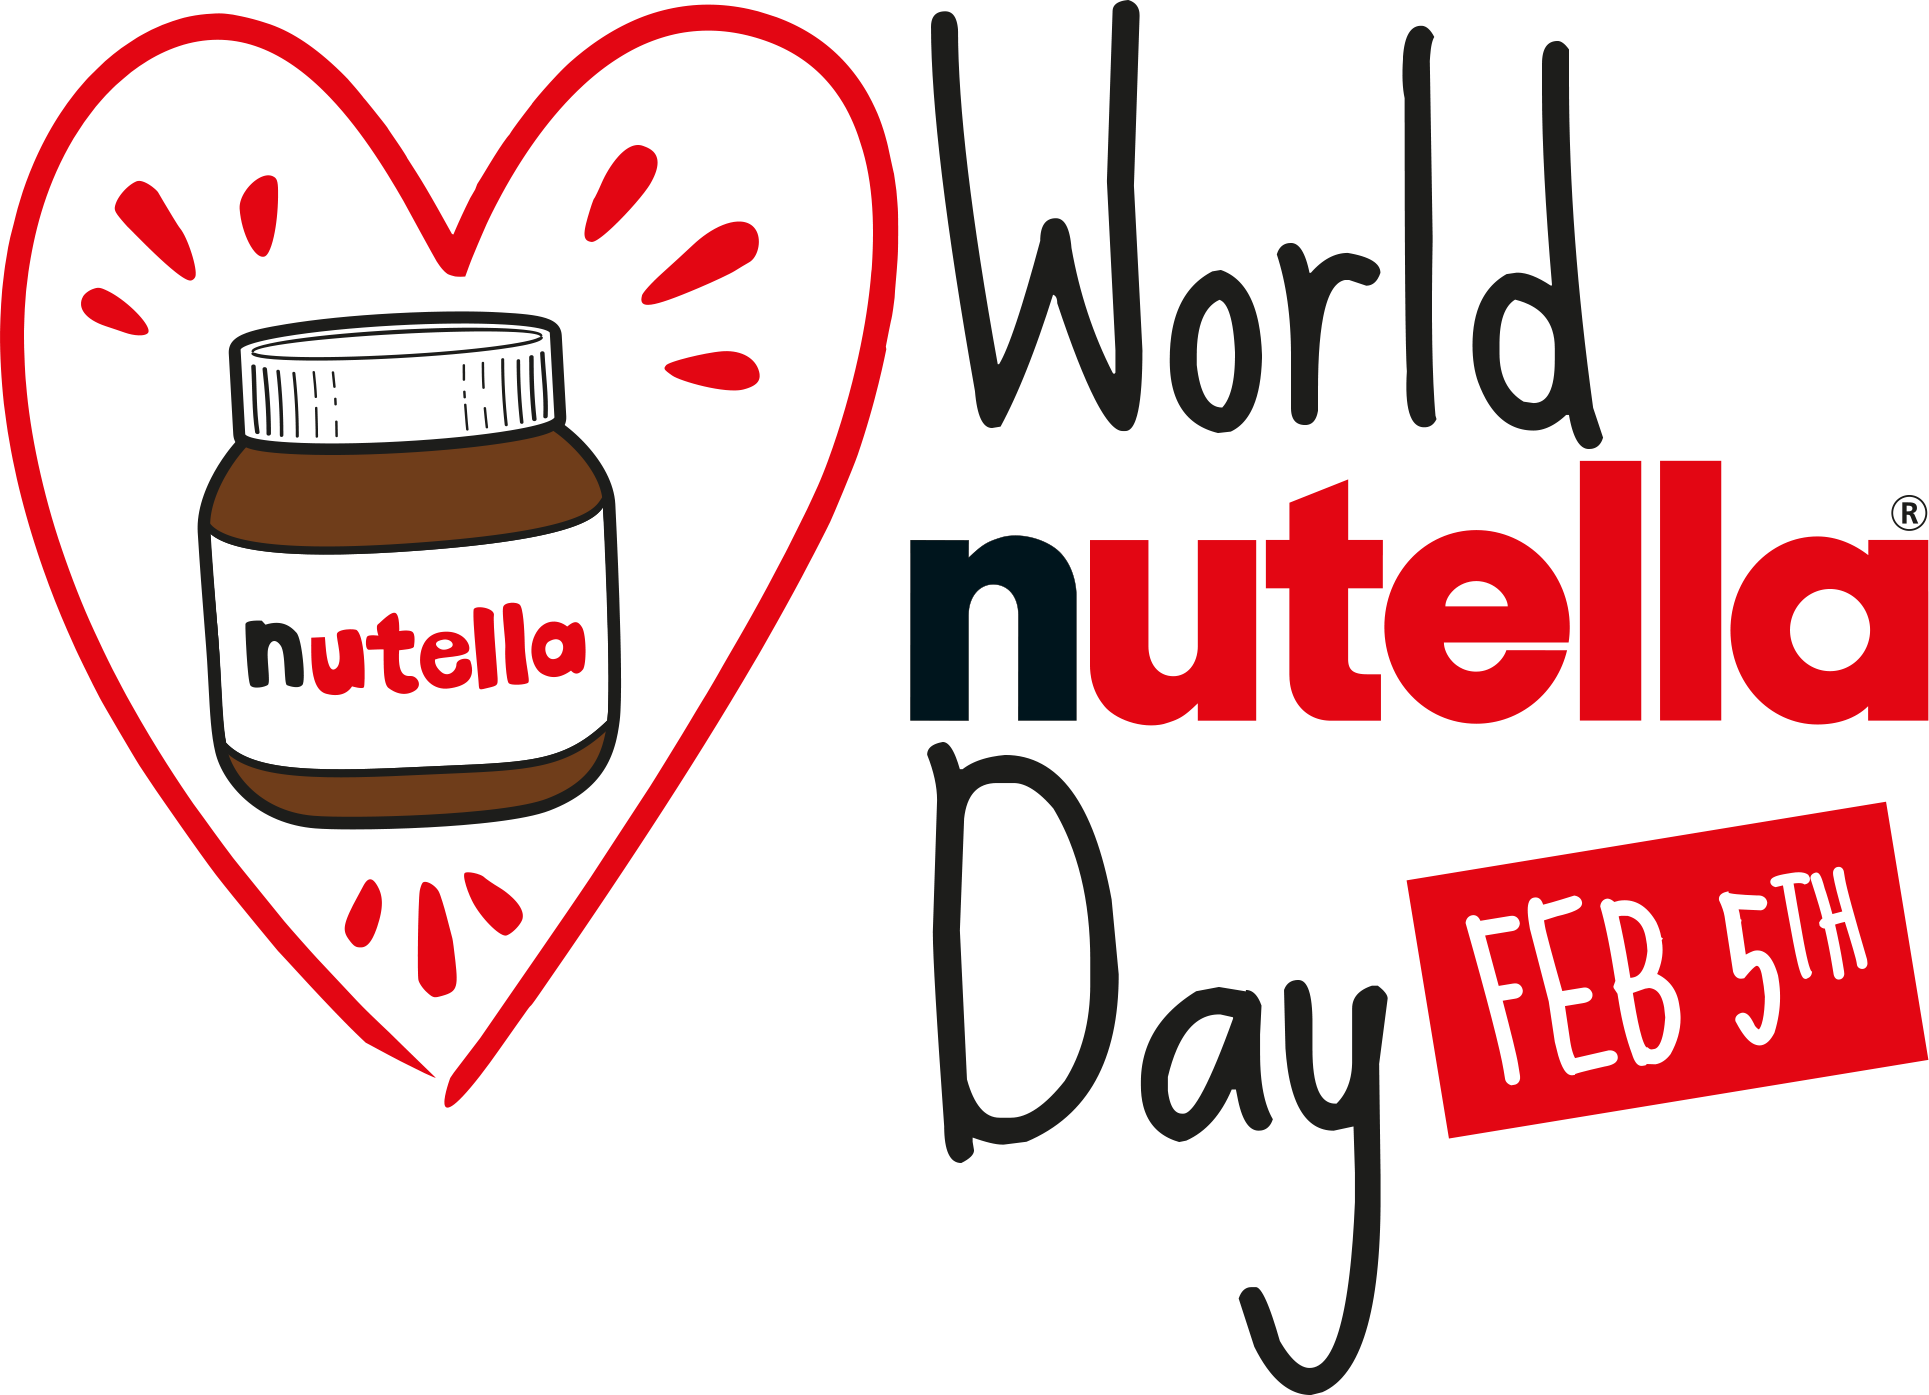 World Nutella Day - Feb. 5th